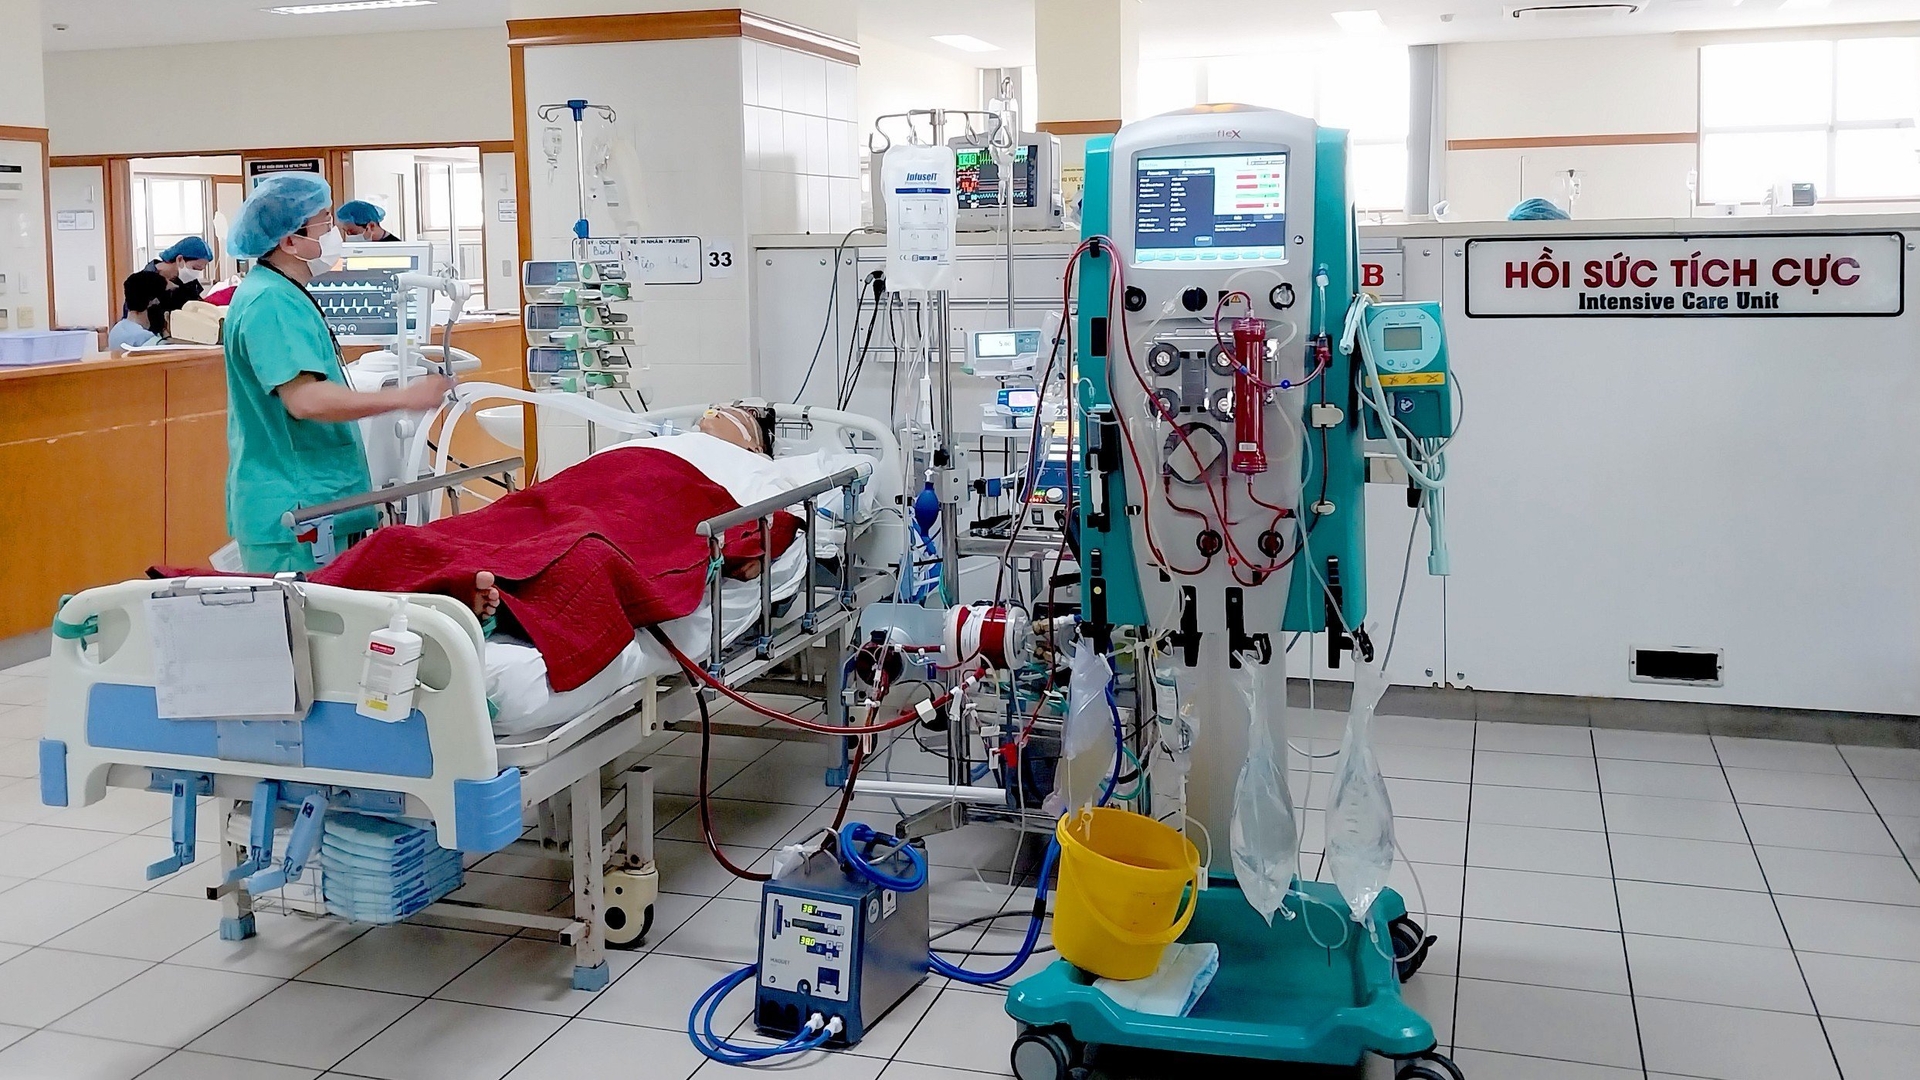 Bệnh nhân Nguyễn Văn D. được các bác sĩ Bệnh viện Trung ương Huế sử dụng kỹ thuật y học hiện đại cứu sống. Ảnh: BVH.